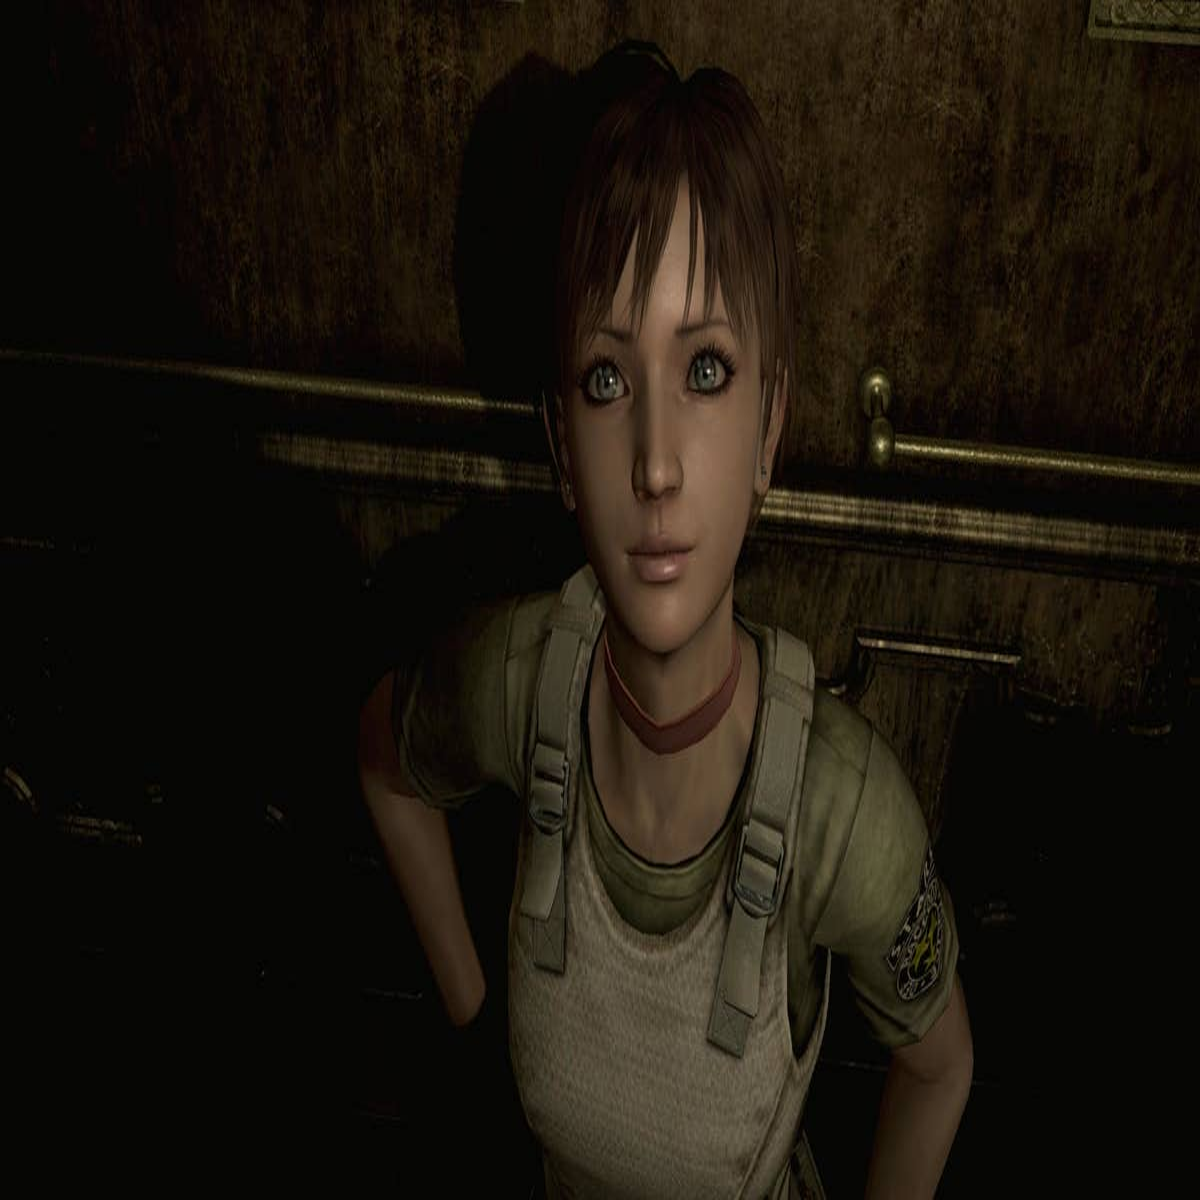 Remake de Resident Evil: Code Veronica feito por fãs ganha novo trailer e  parece promissor